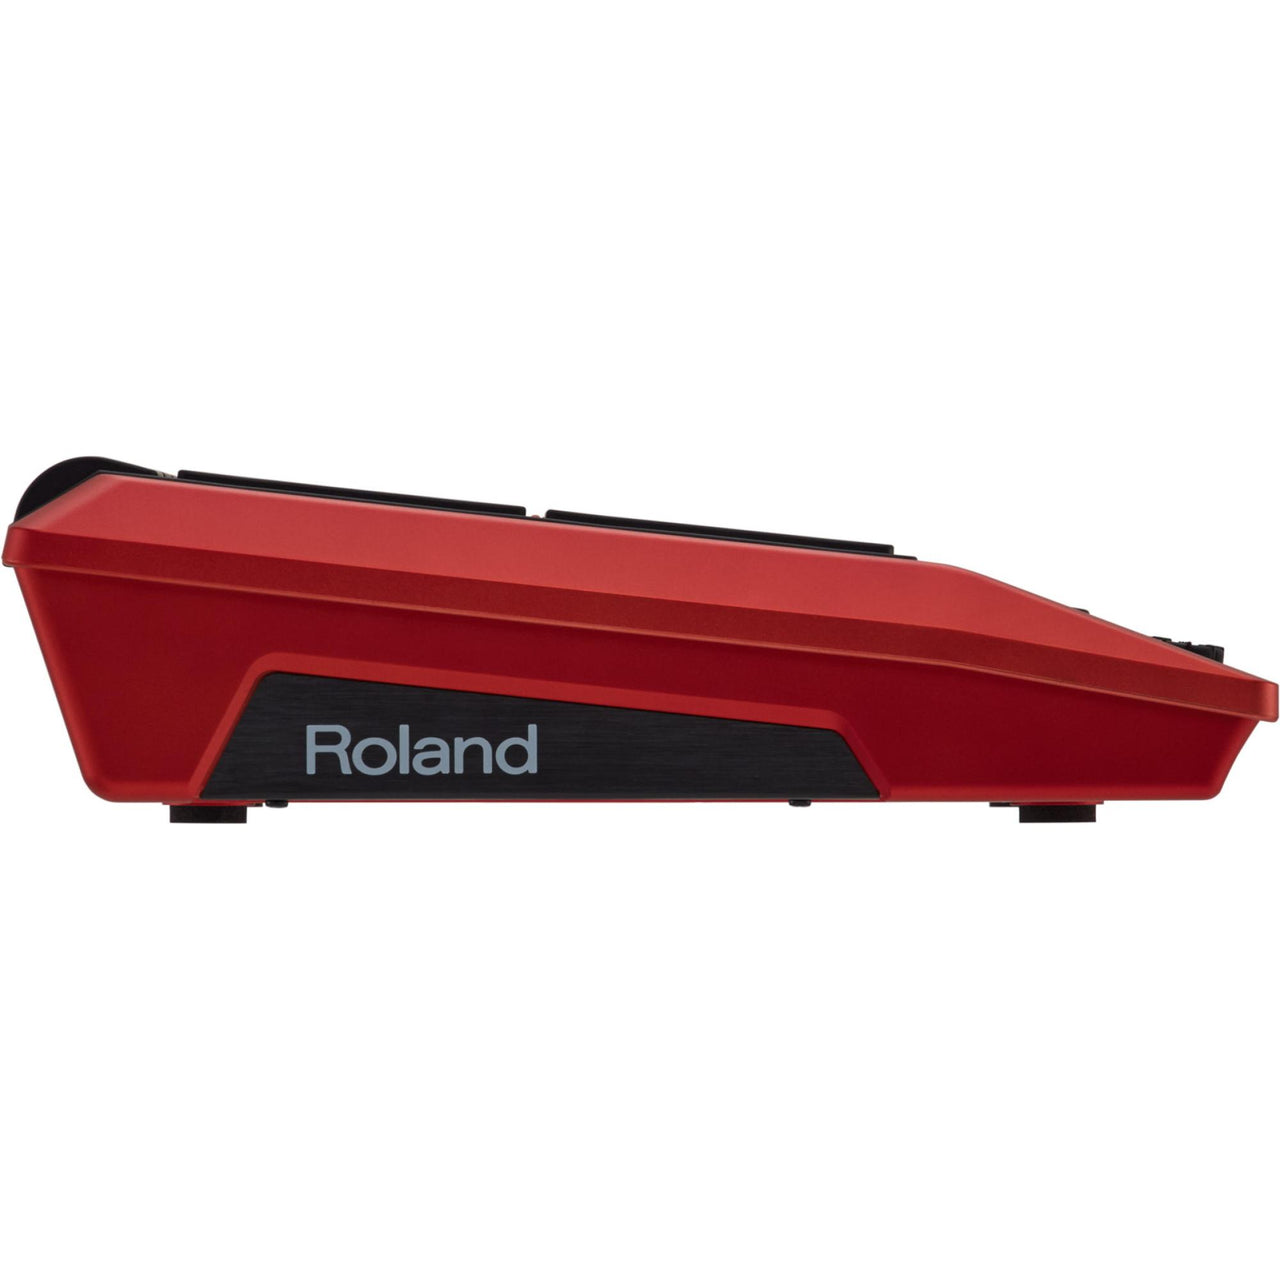 Modulo Roland Spd-sx-se Percusion Y Sampleo Edicion Especial Rojo